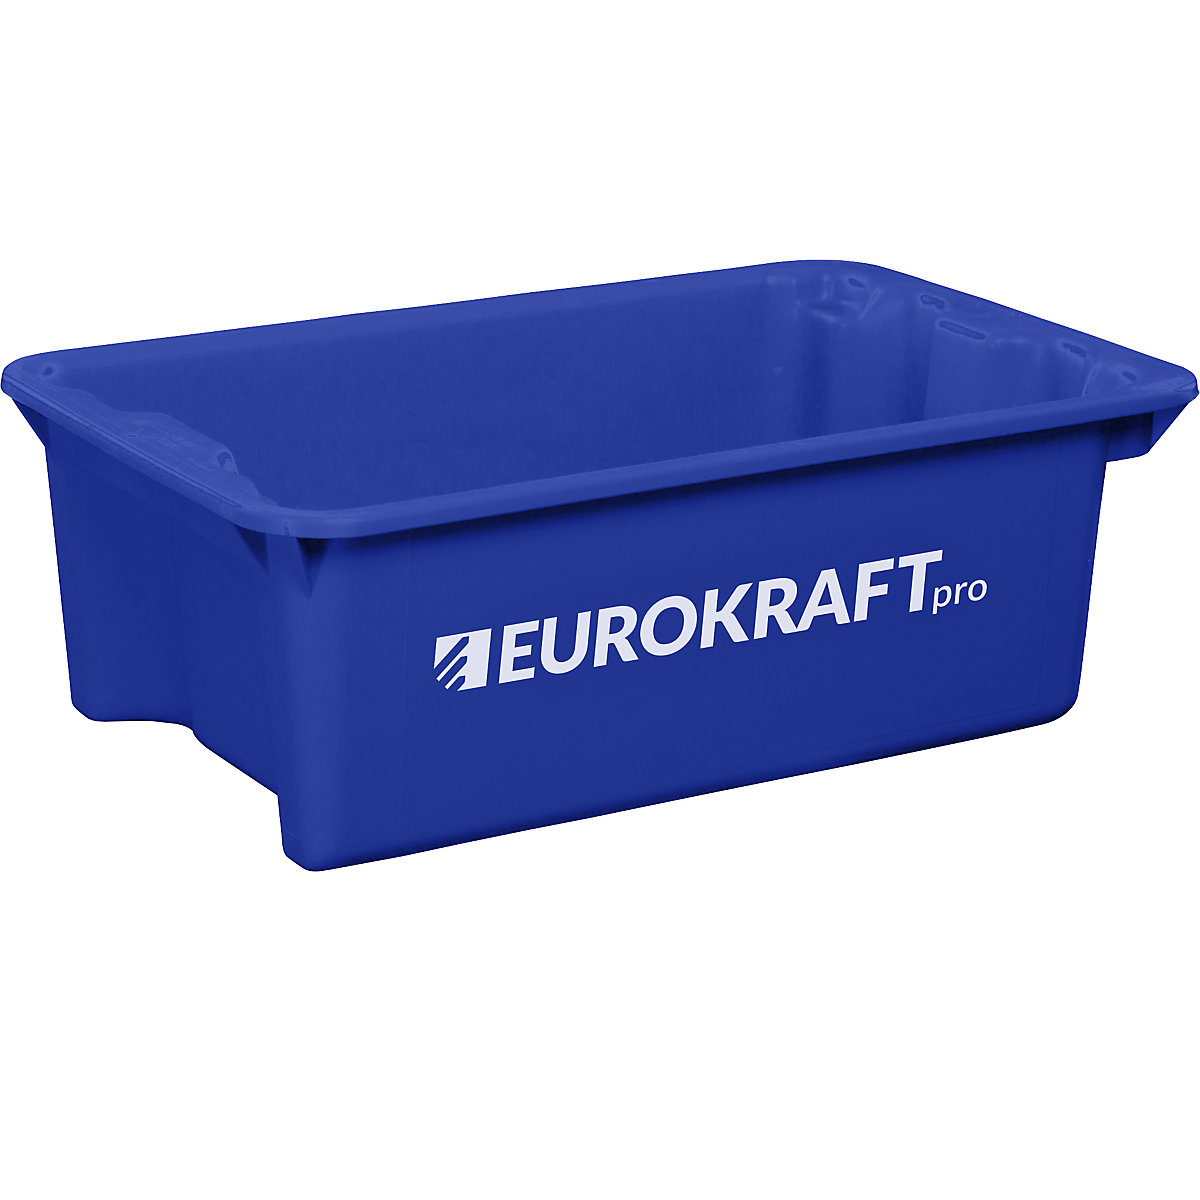 EUROKRAFTpro – Otočná stohovací nádoba z polypropylenu vhodného pro potraviny, obsah 34 litrů, bal.j. 3 ks, stěny a dno plné, modrá